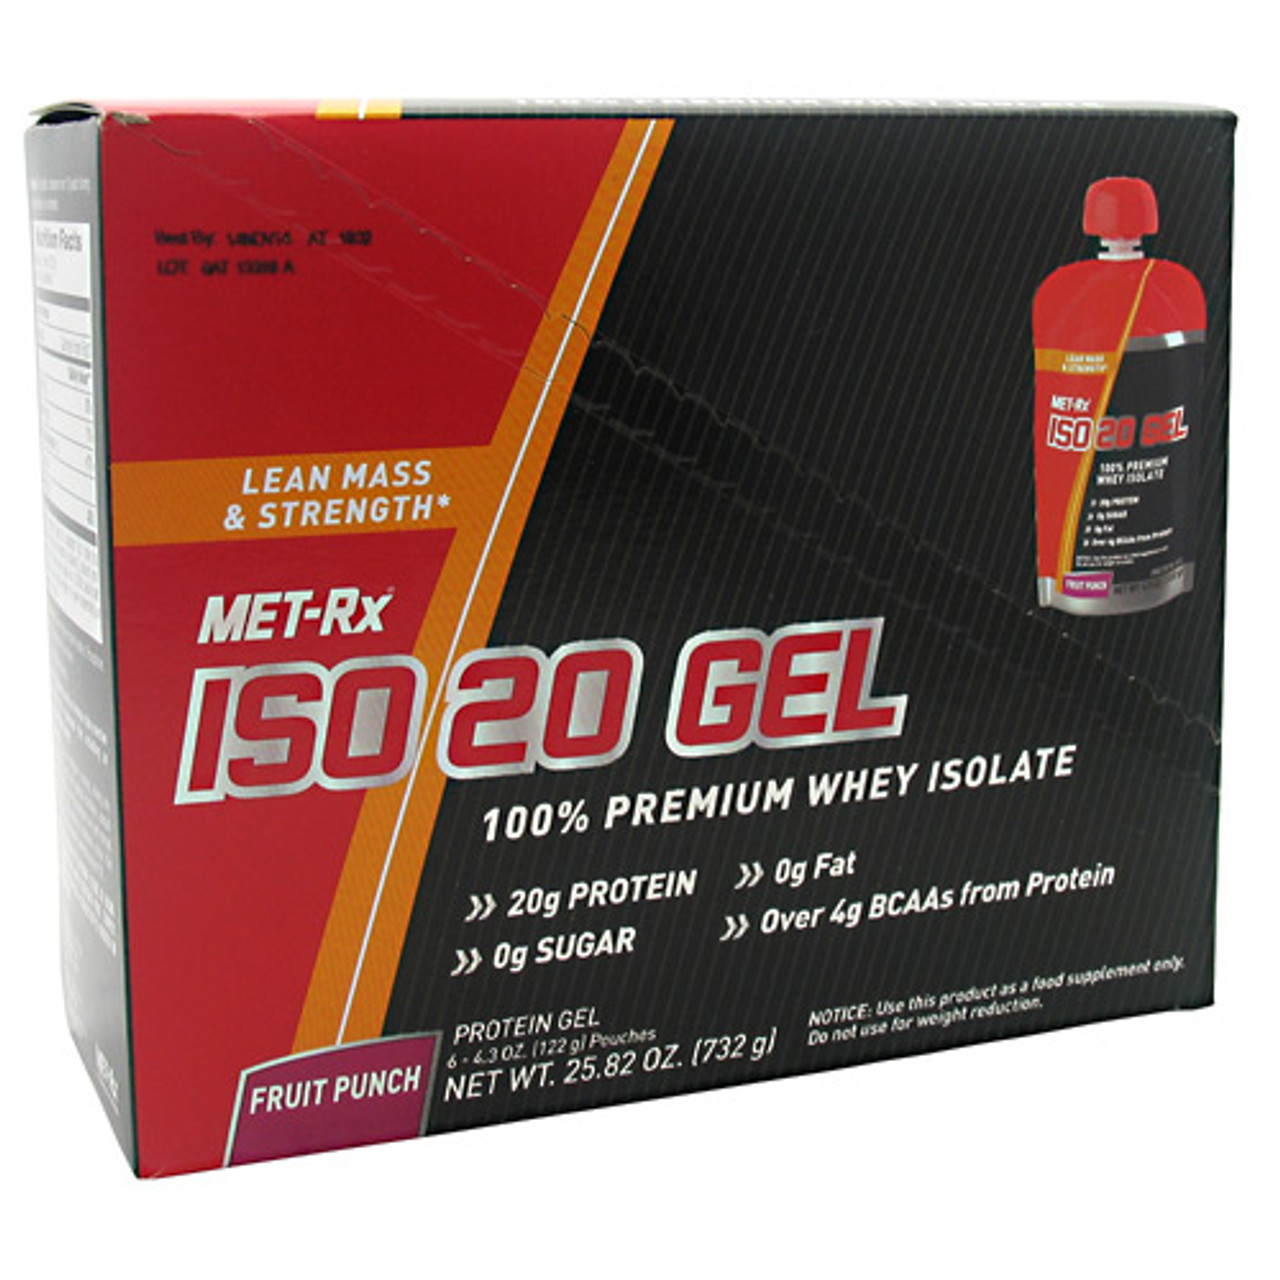 Iso 20 Gel by MET-Rx 6pk